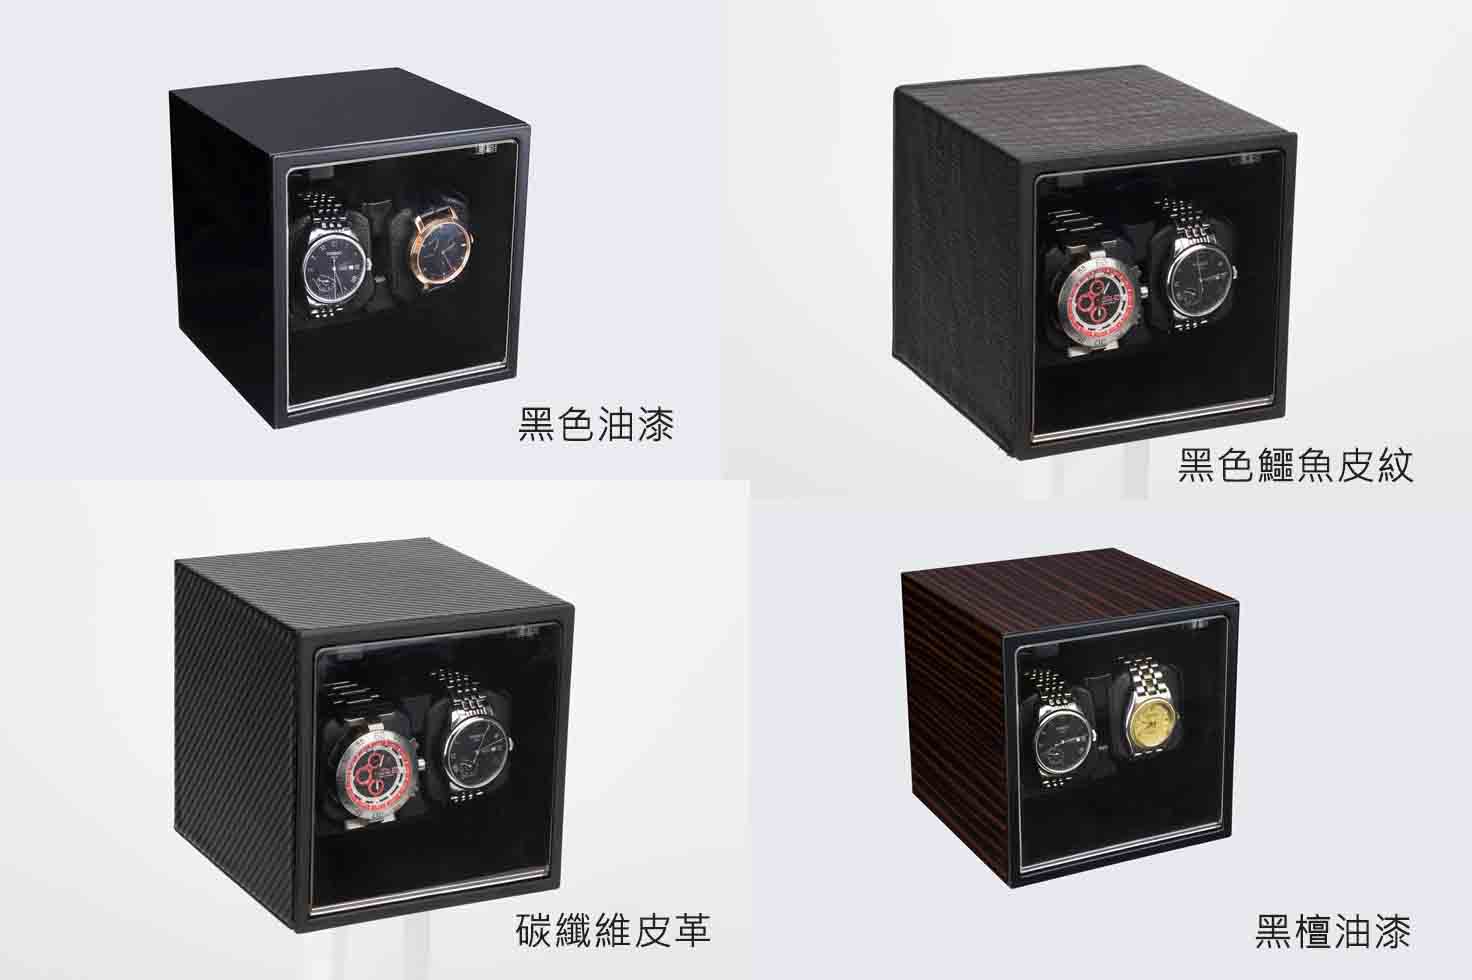 INTIME 雙錶位自動上鏈自轉錶盒- Outlet Express HK生活百貨城實拍相片